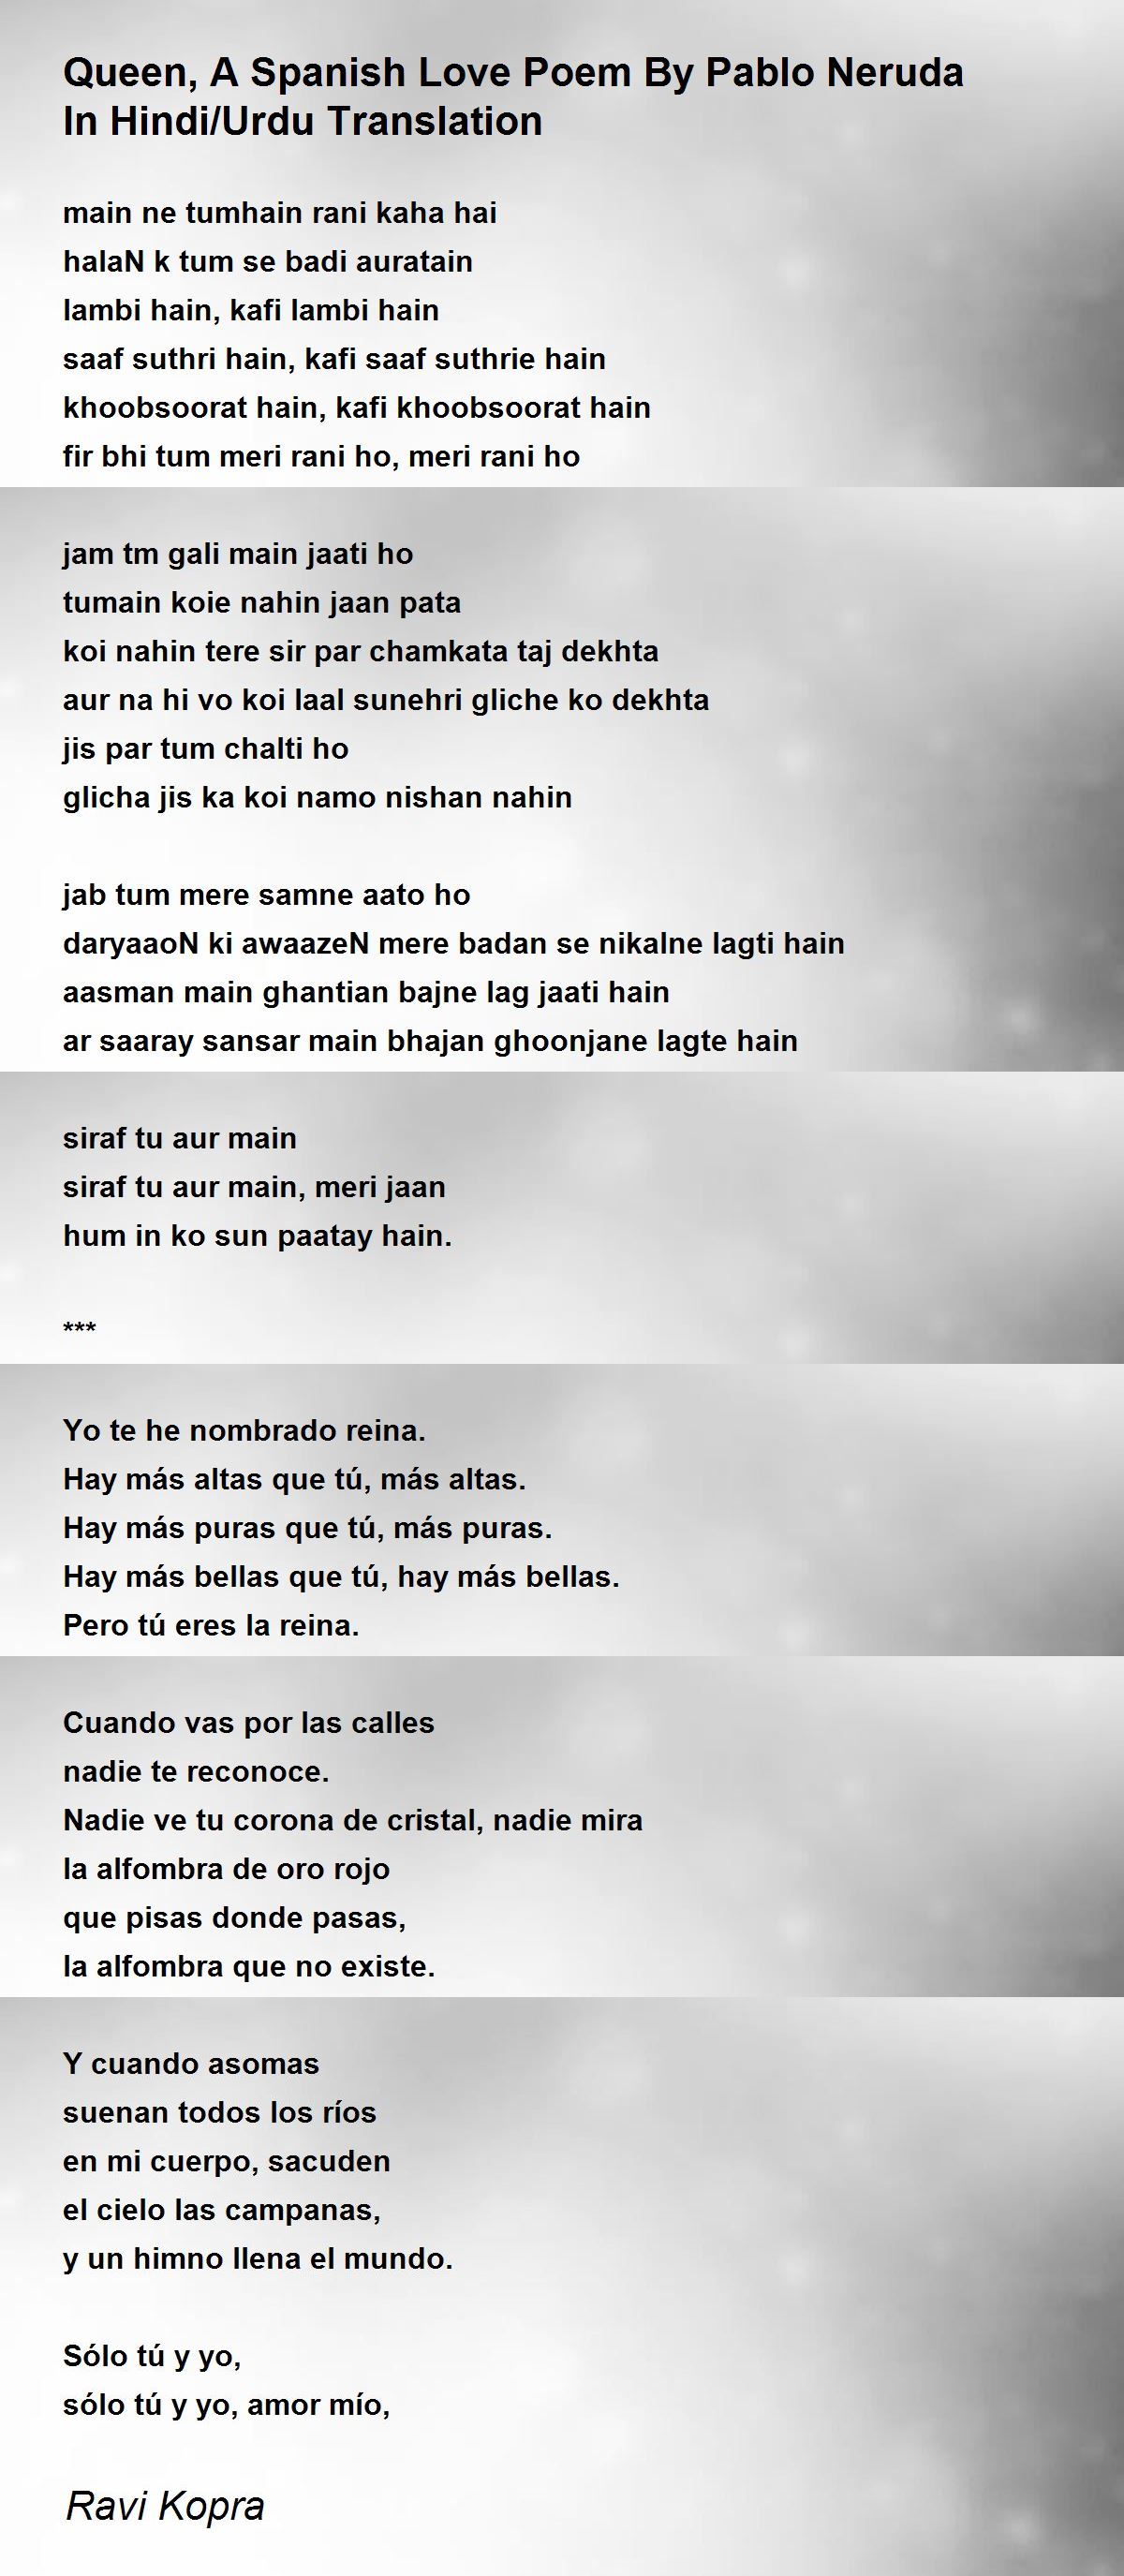 Queen, A Spanish Love Poem By Pablo Neruda In Hindi/Urdu